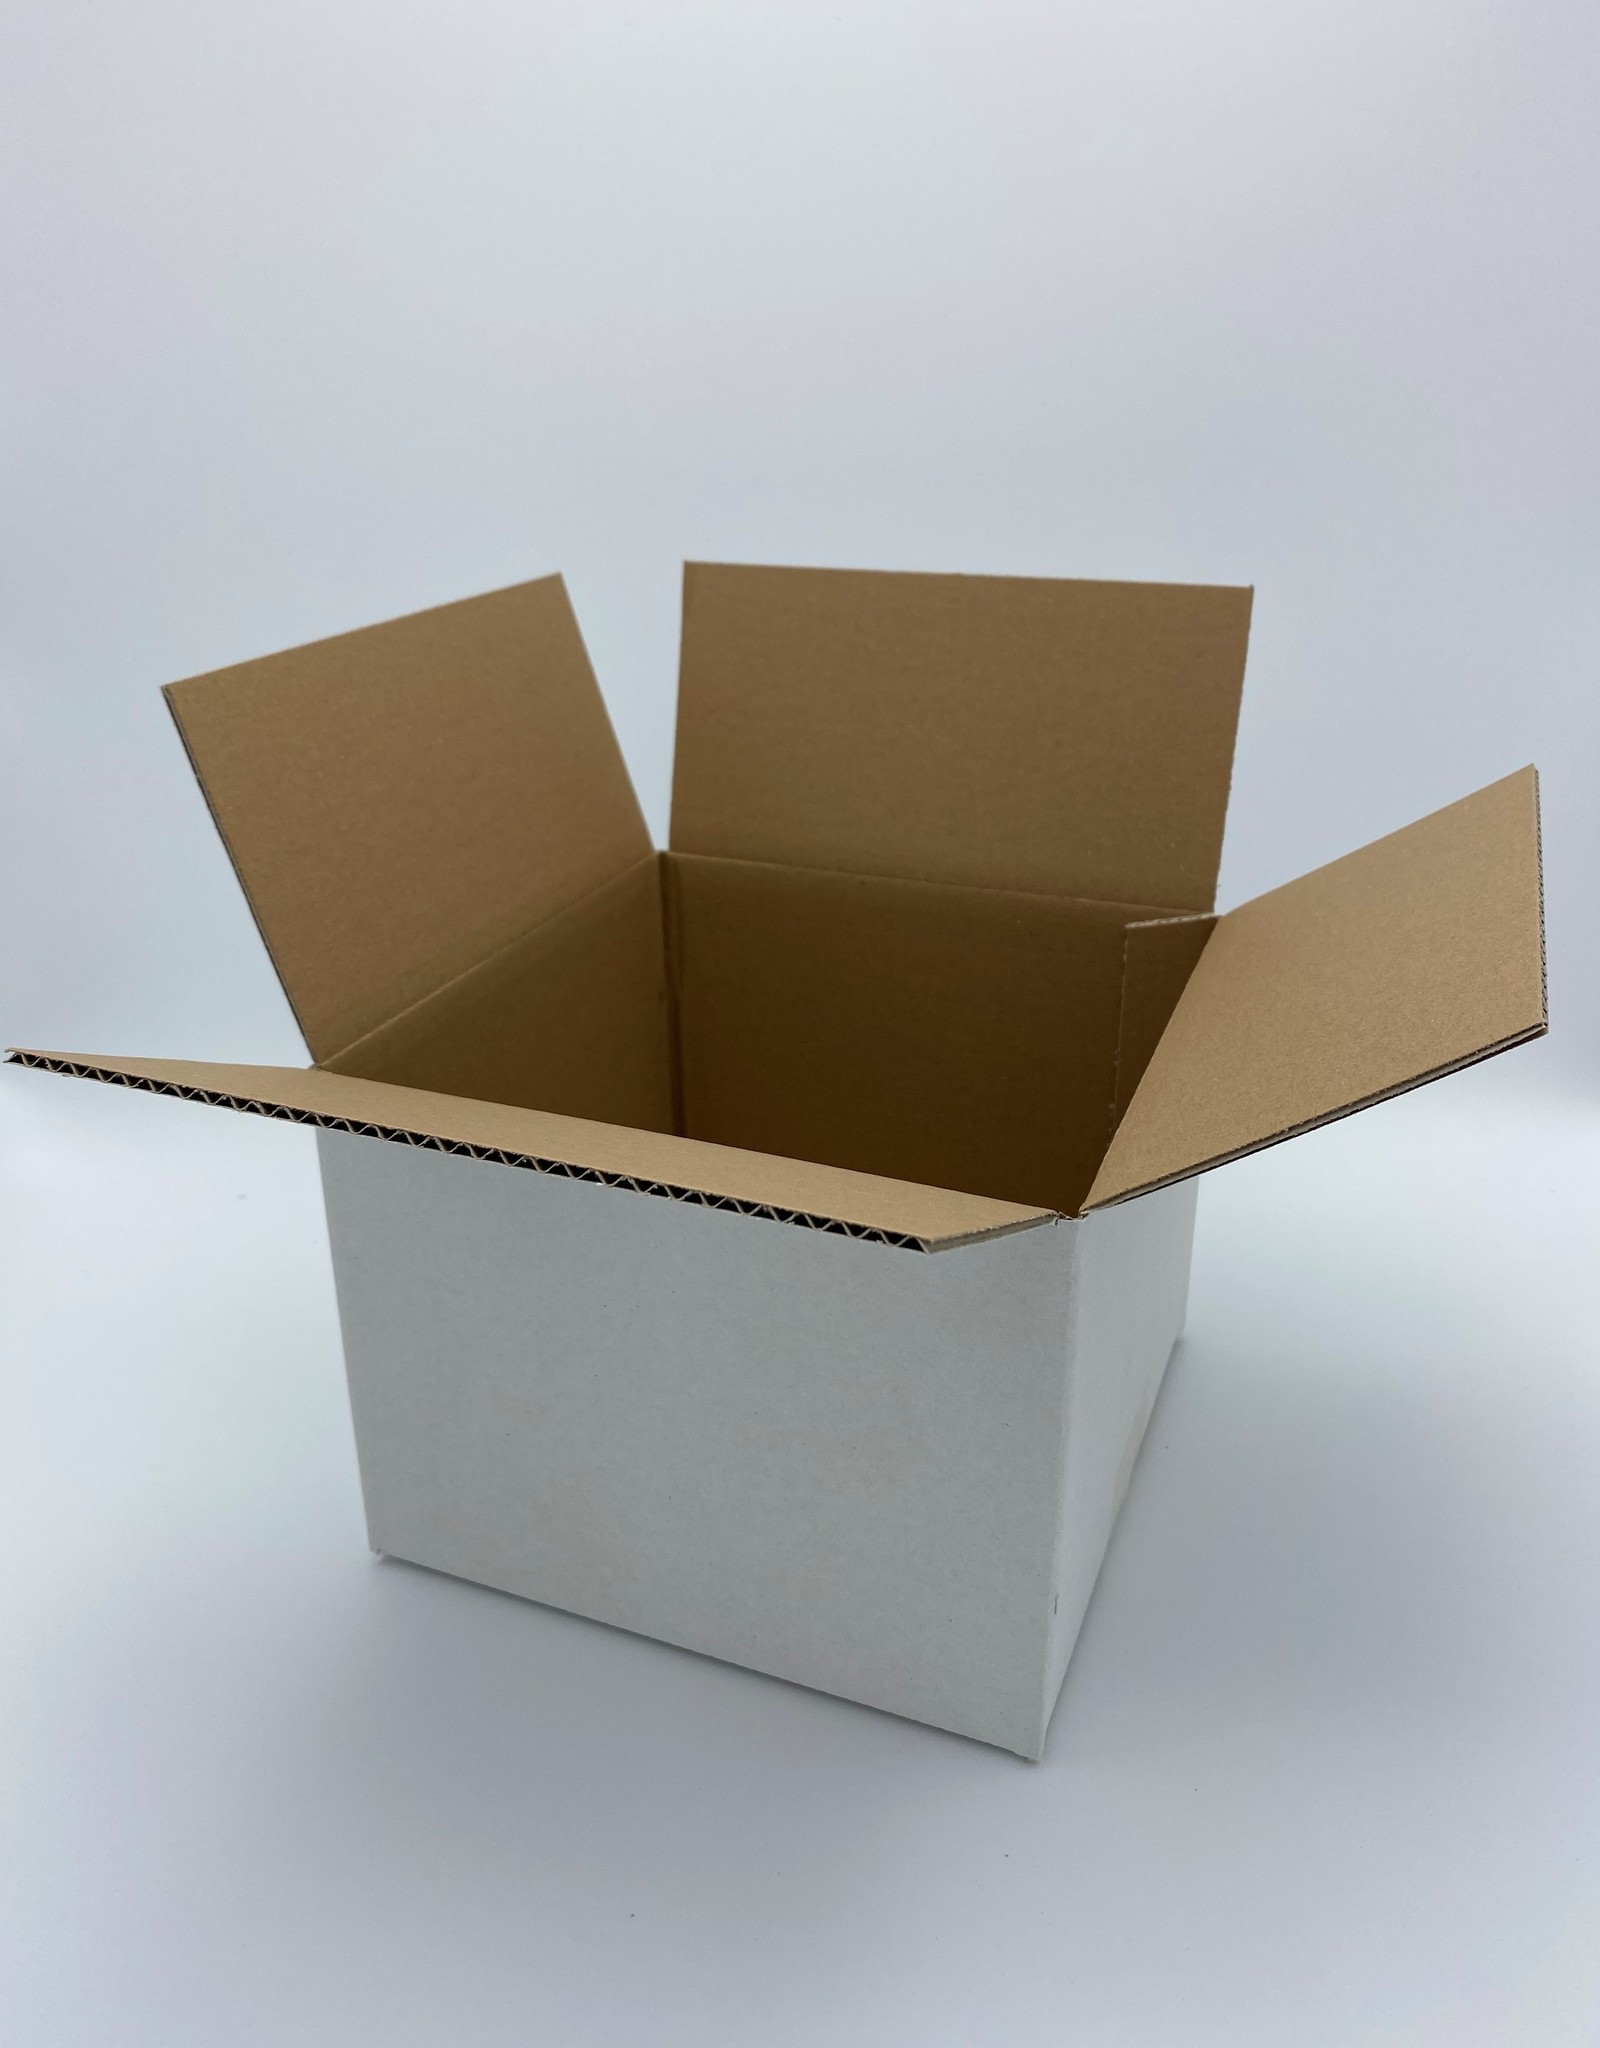 Goedkope dozen Al vanaf 0,29 ct. | De ruimste verpakkingen - Webshop Klingele Golfkarton